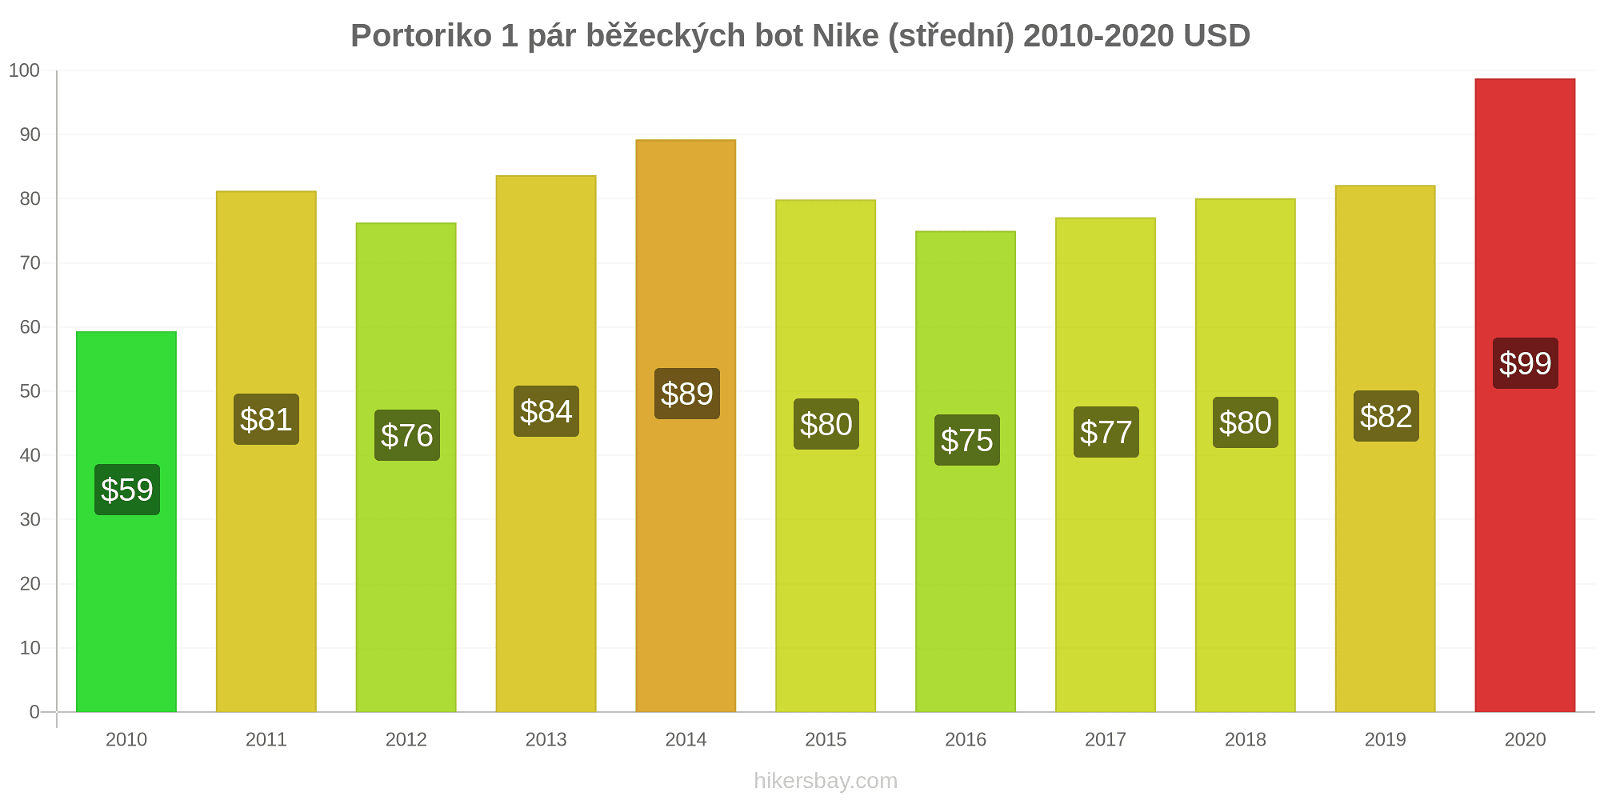 Portoriko změny cen 1 pár běžeckých bot Nike (střední) hikersbay.com